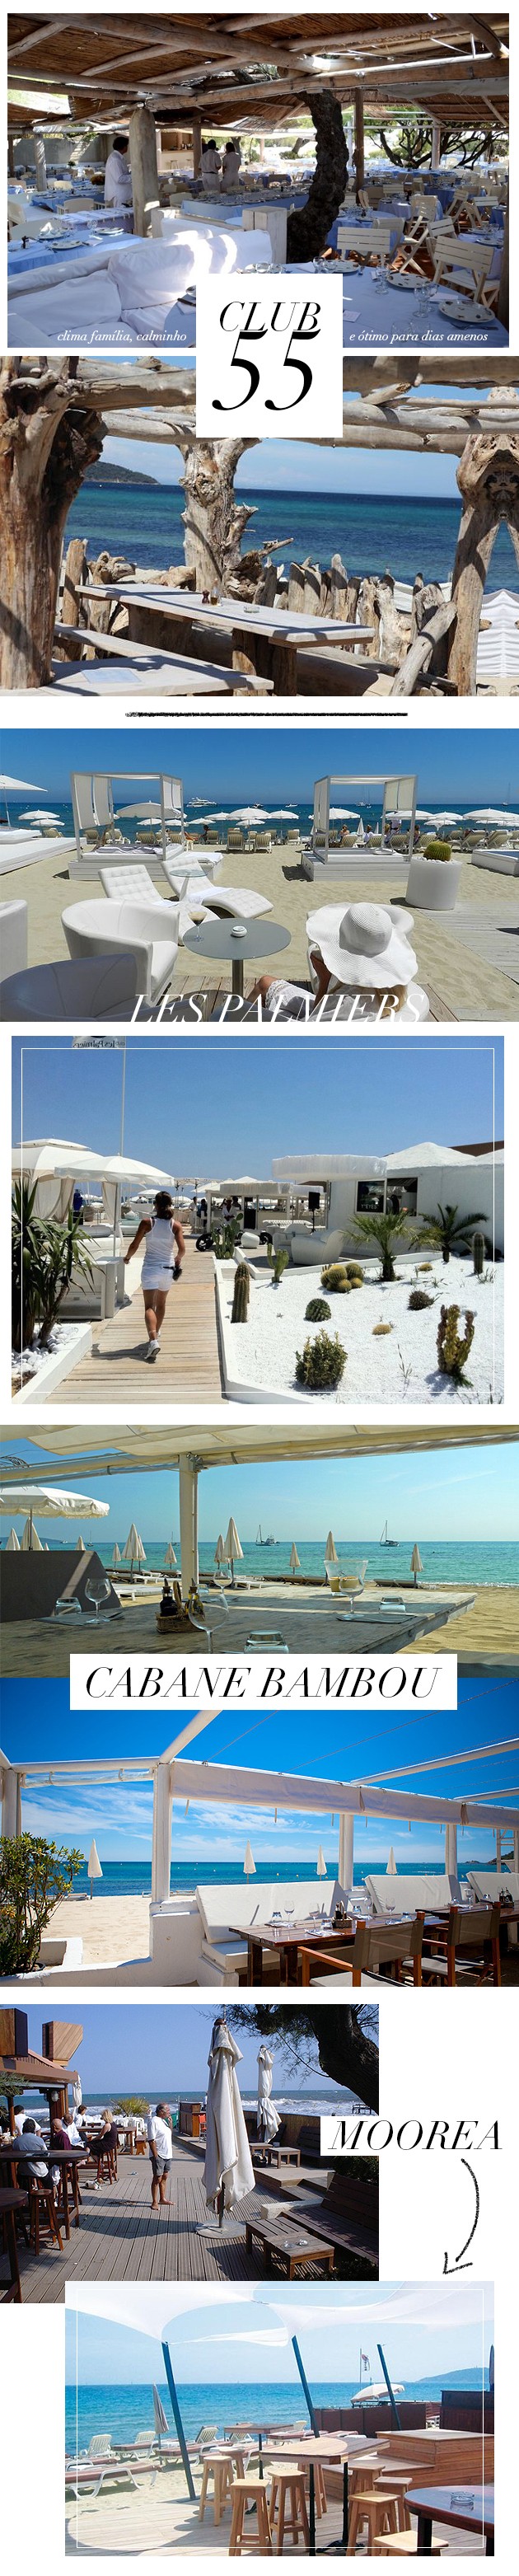 Dicas de Saint Tropez quais beach blubs beach club ir tudo sobre praia onde ficar blog Lari Duarte informações sul da França cidade